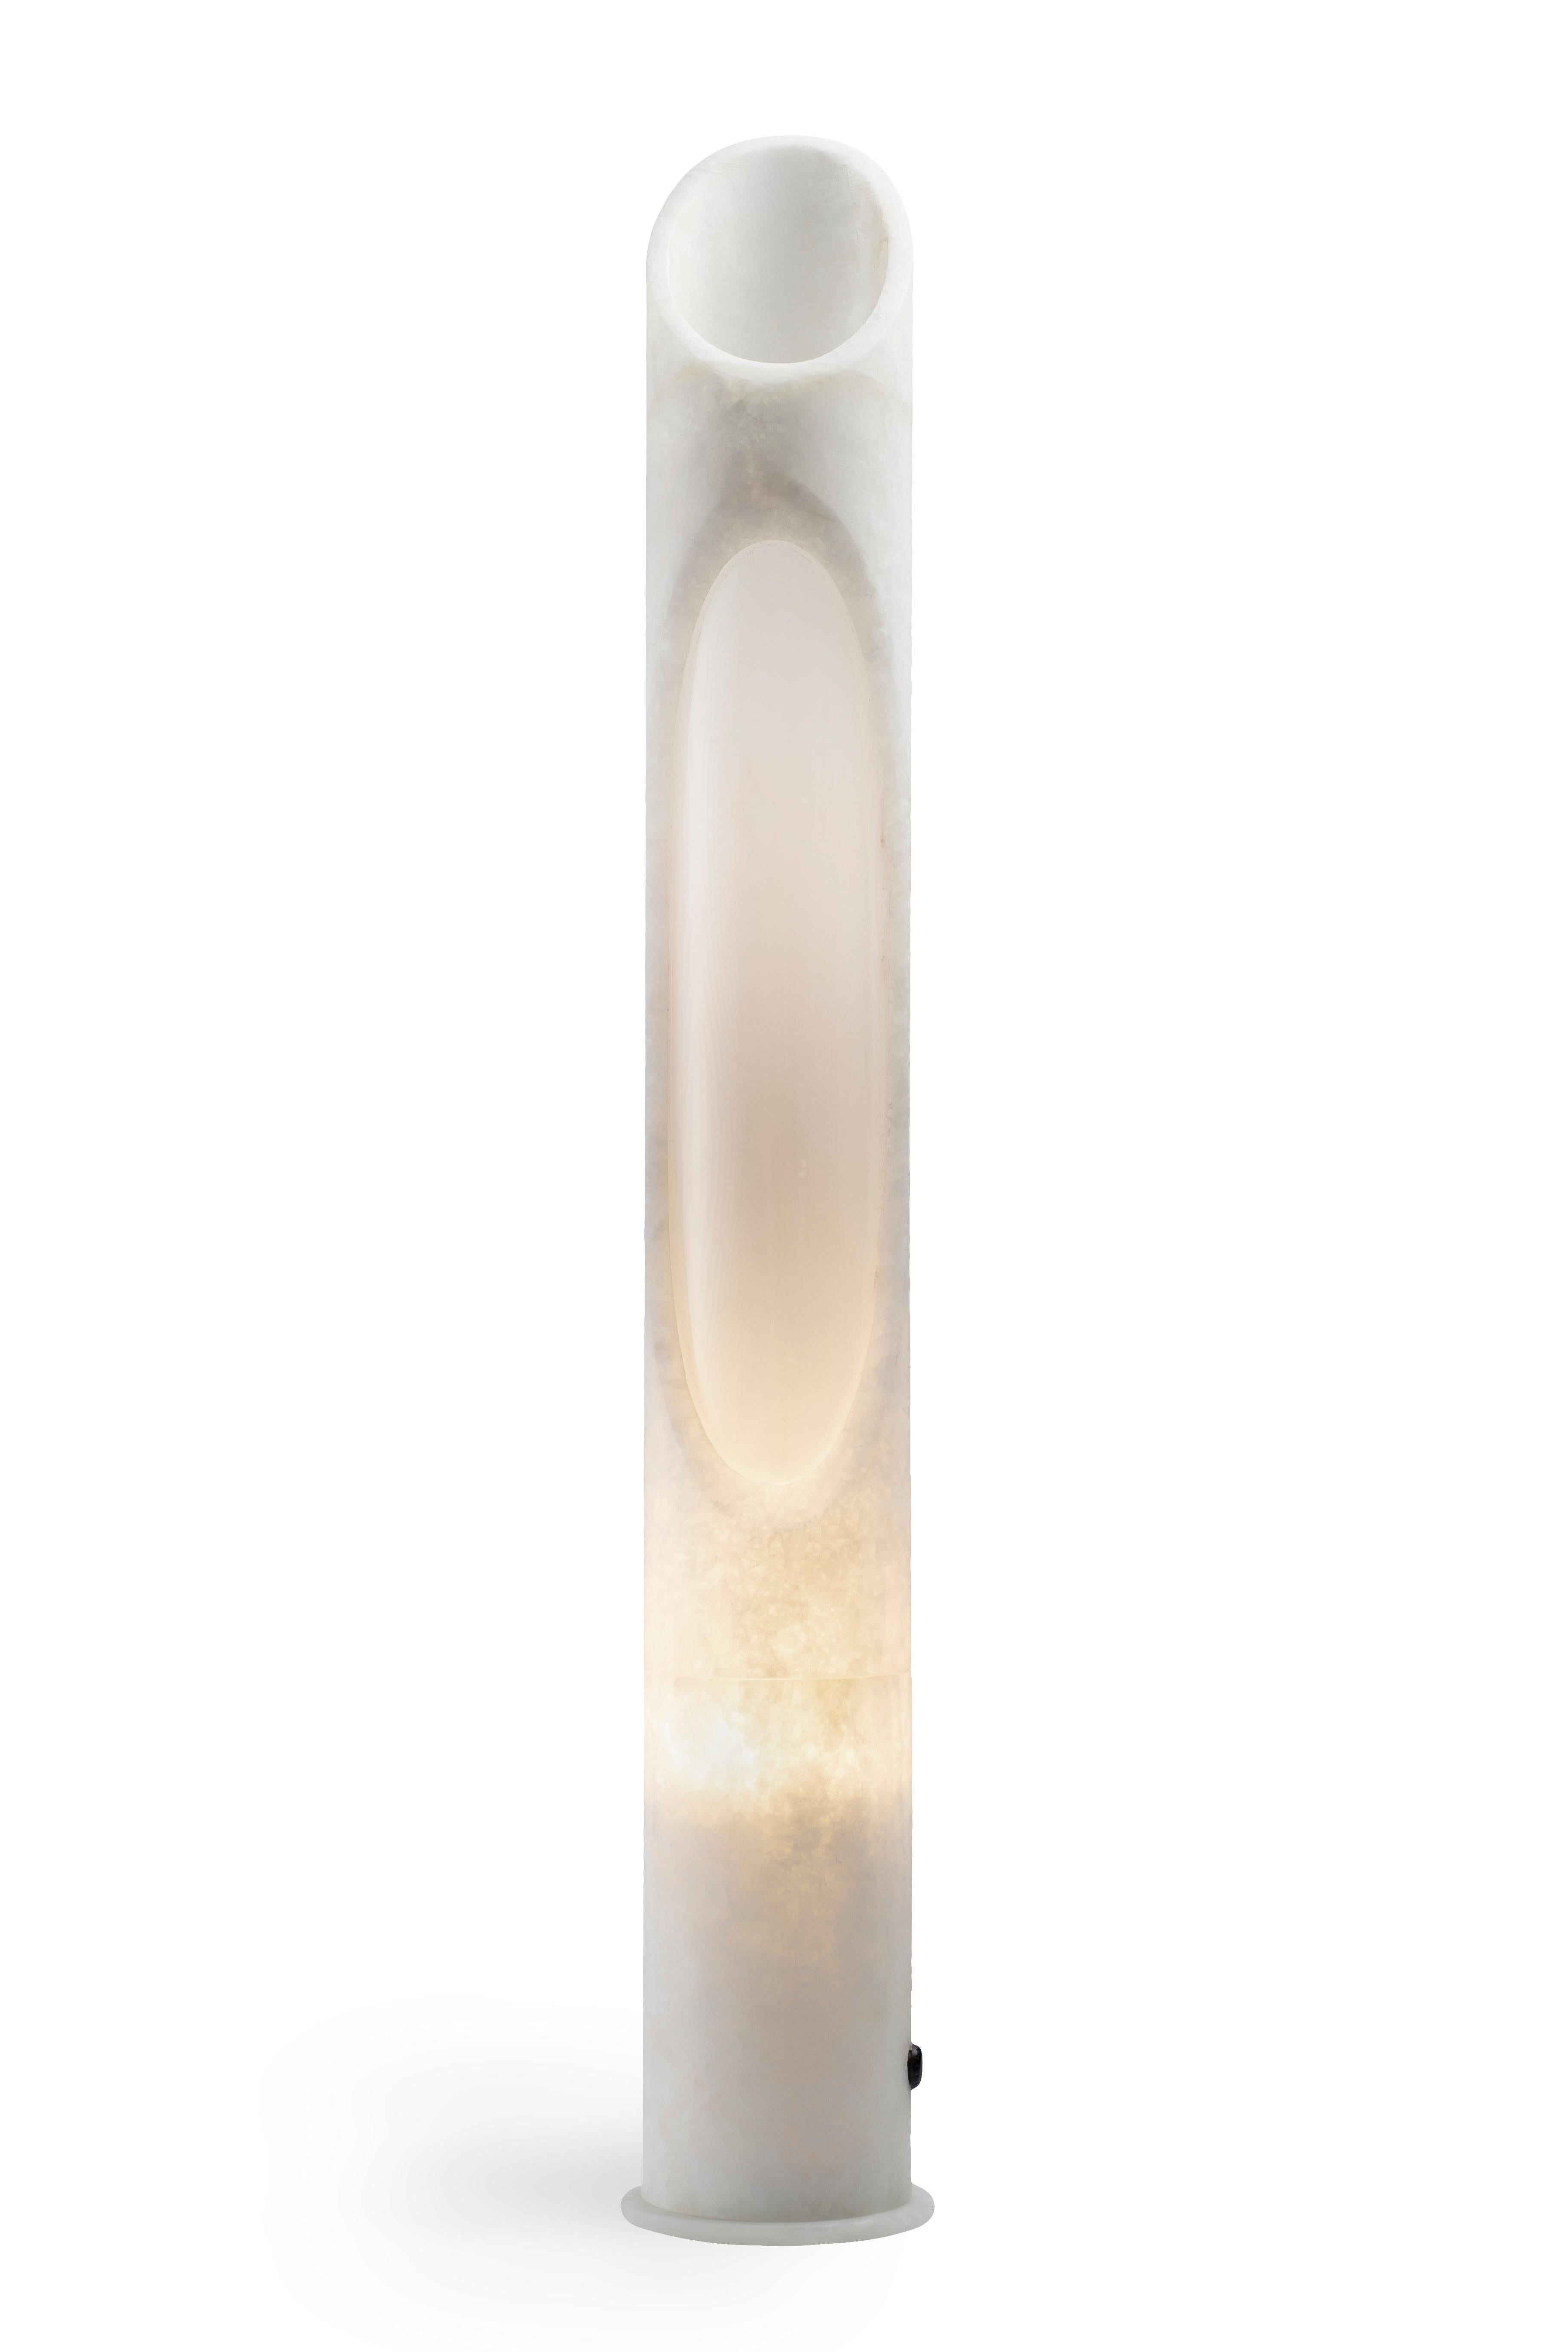 Lampe L aus weißem Onyx-Marmor, entworfen von Jacopo Simonetti.
Erhältlich auch in Rosa Egeo, Weiß Arabescato, Schwarz Marquinia und in der Version S. 

Armonia Collection: Inspiriert von dem fesselnden Bild, das zwei kontrastierende Elemente